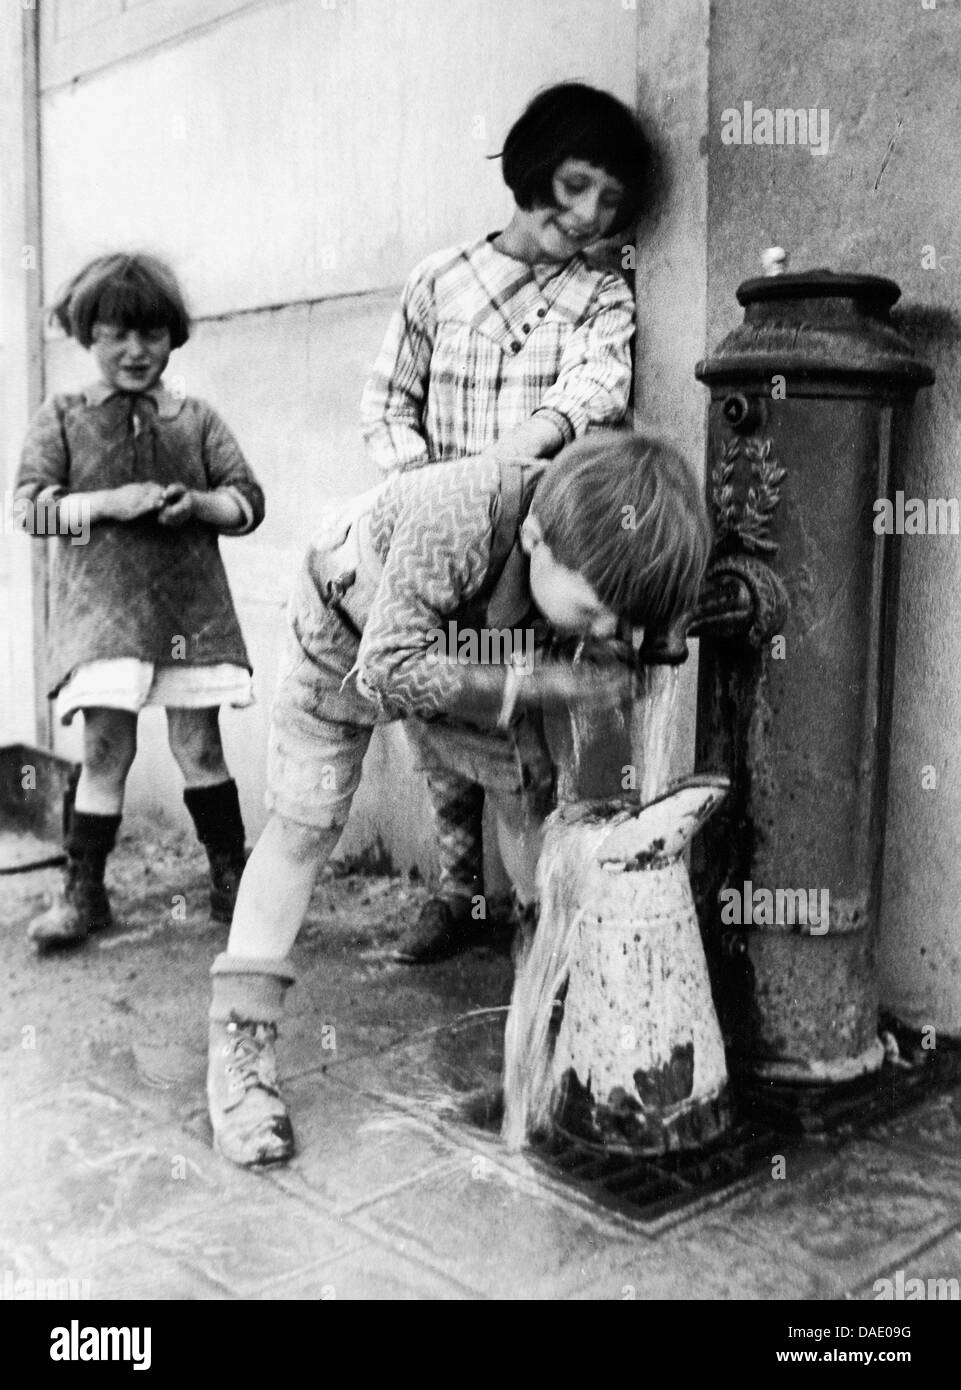 Bambini a una fontana di acqua a Parigi 1934. Immagine dal fotografo Fred Stein (1909-1967) che emigrarono 1933 dalla Germania nazista per la Francia e infine negli Stati Uniti. Foto Stock